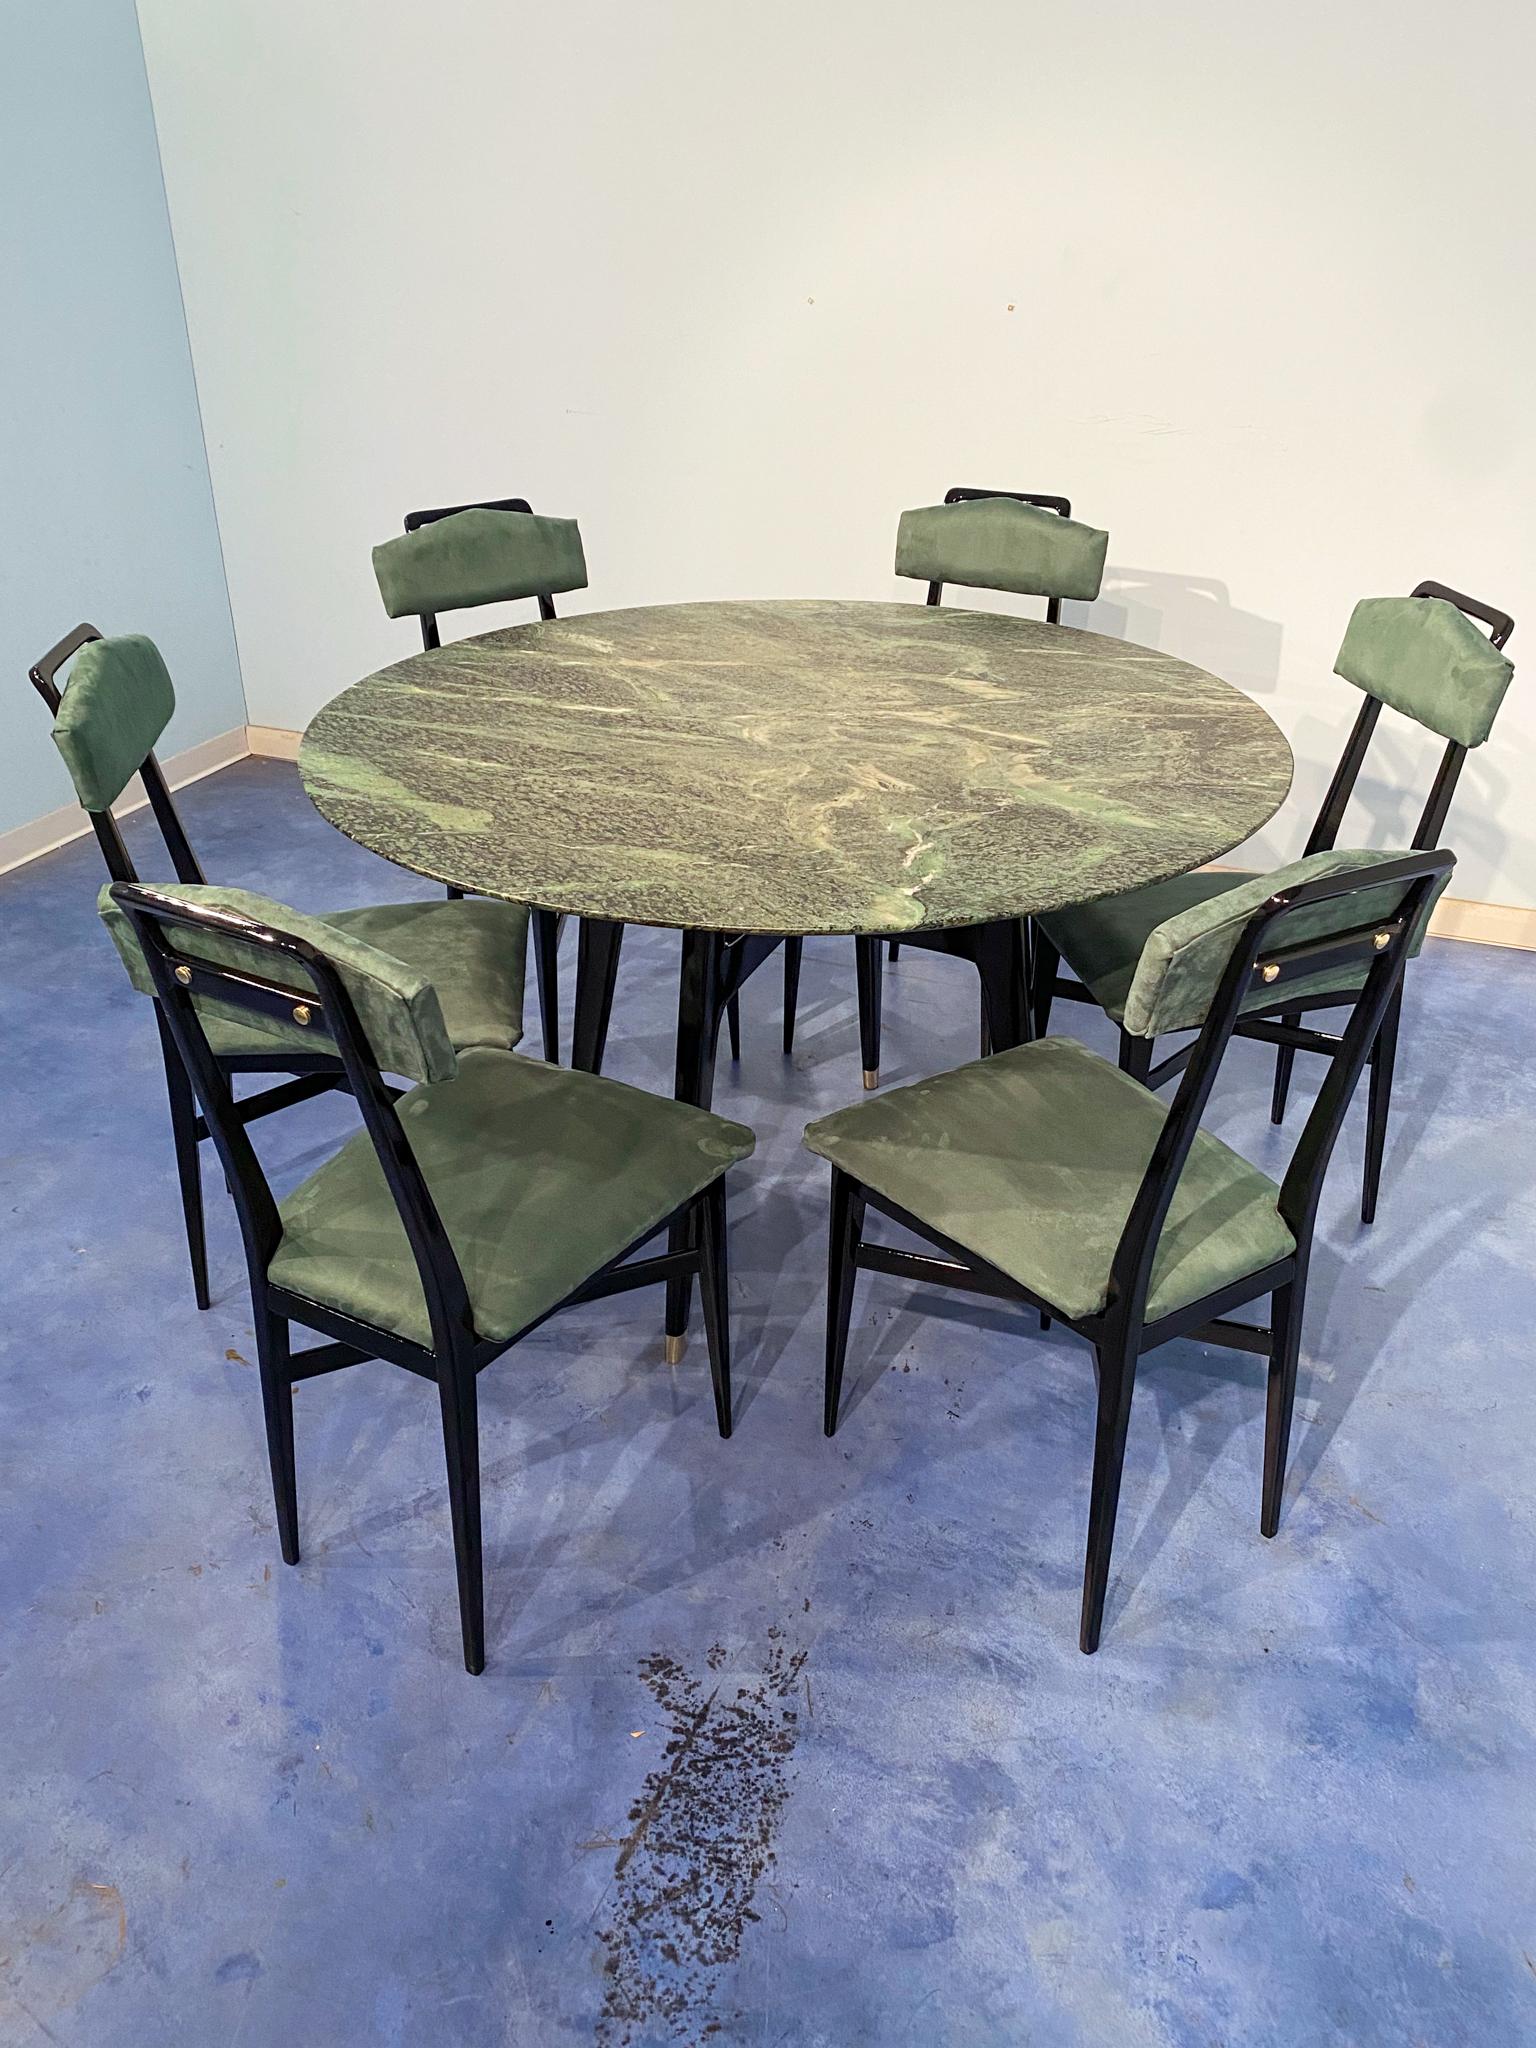 Dieser stilvolle runde Marmor-Mitteltisch aus der Mitte des Jahrhunderts ist ein beeindruckendes Beispiel für italienisches Design der 1950er Jahre. Die Platte ist aus kostbarem grünen Marmor aus den Alpen gefertigt. Der schwarz lackierte Sockel aus